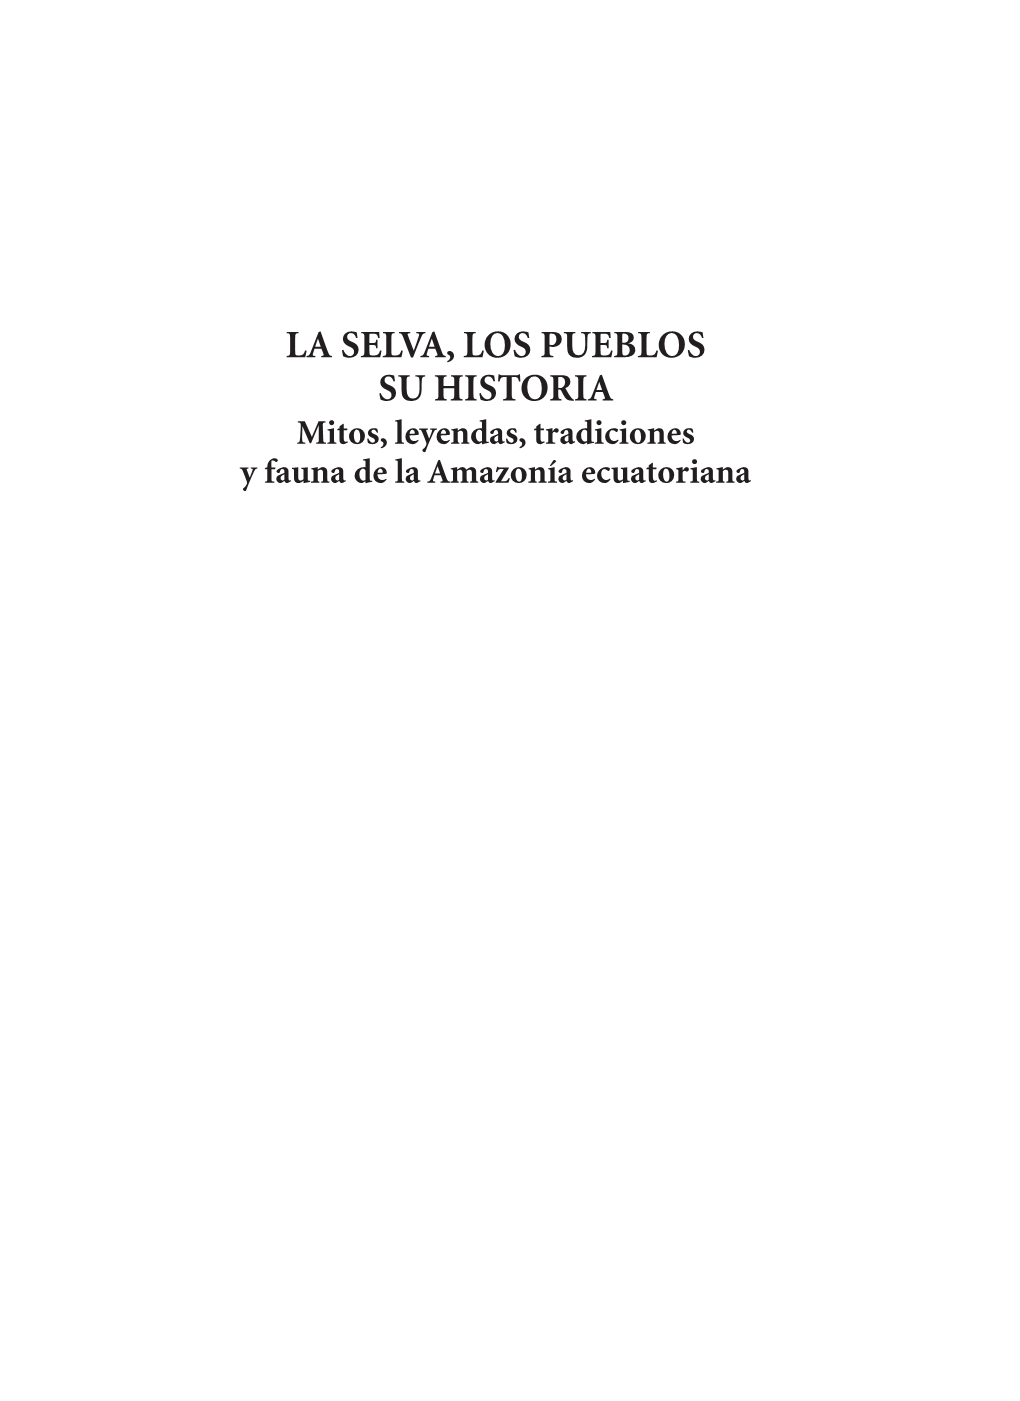 LA SELVA, LOS PUEBLOS SU HISTORIA Mitos, Leyendas, Tradiciones Y Fauna De La Amazonia Ecuatoriana S